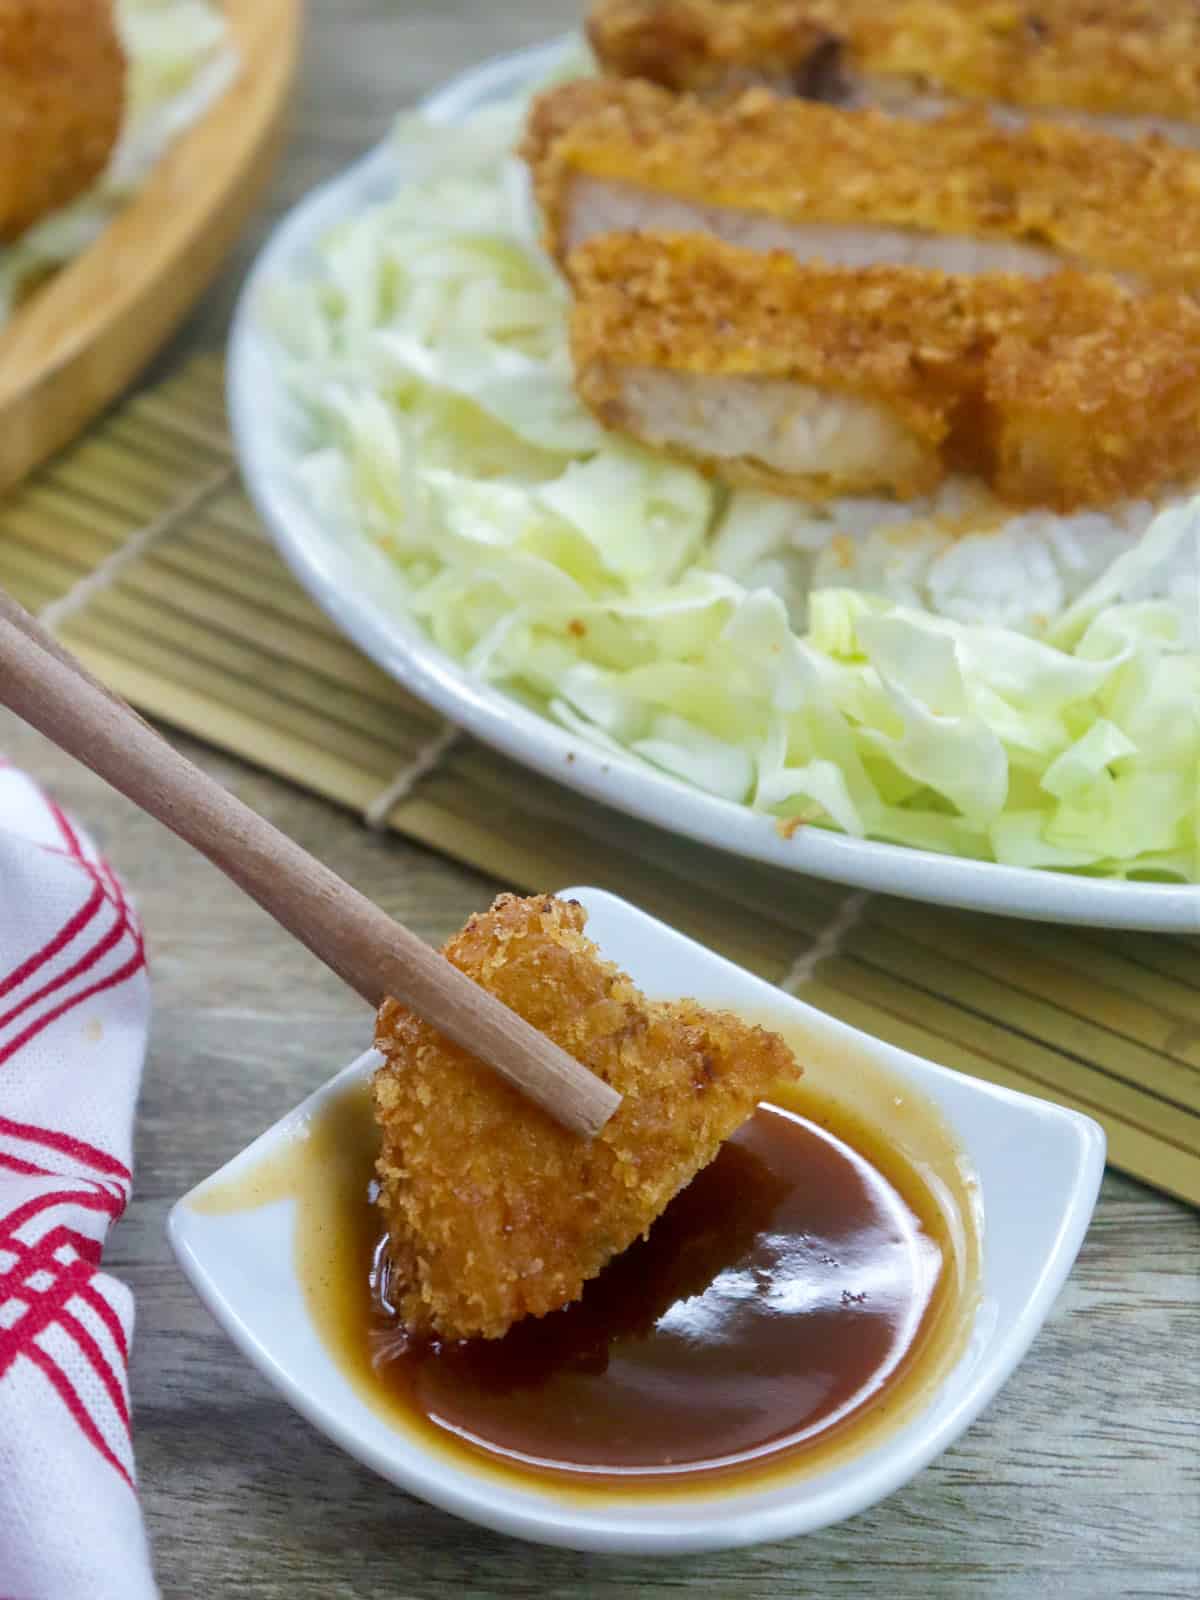 dipping slice of breaded pork chop in tonkatsu sauce